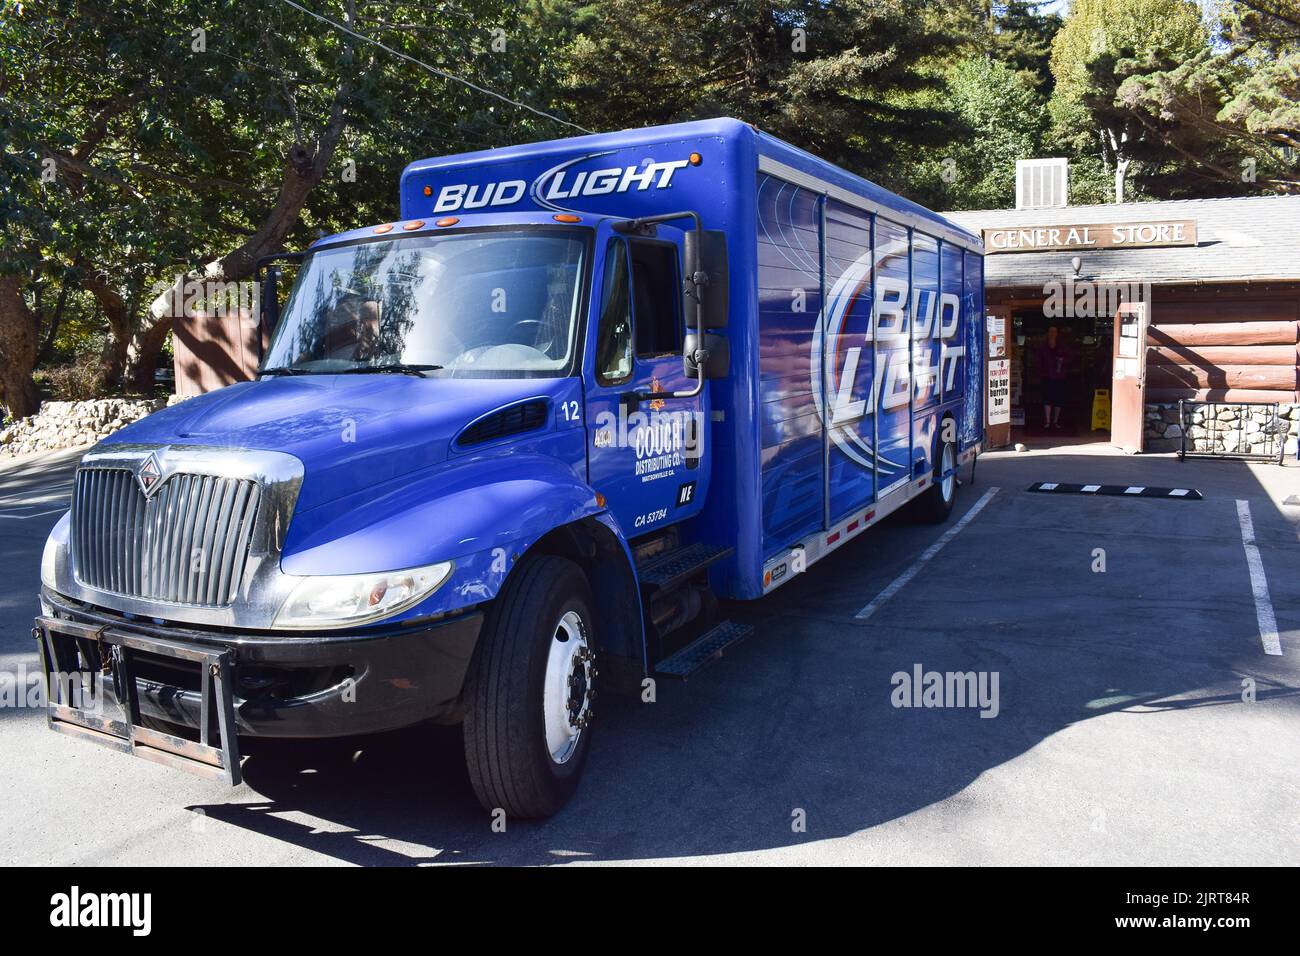 Camion de livraison Blue Bud Light (bière American Light Lager) stationné devant un magasin général de Big sur. Banque D'Images